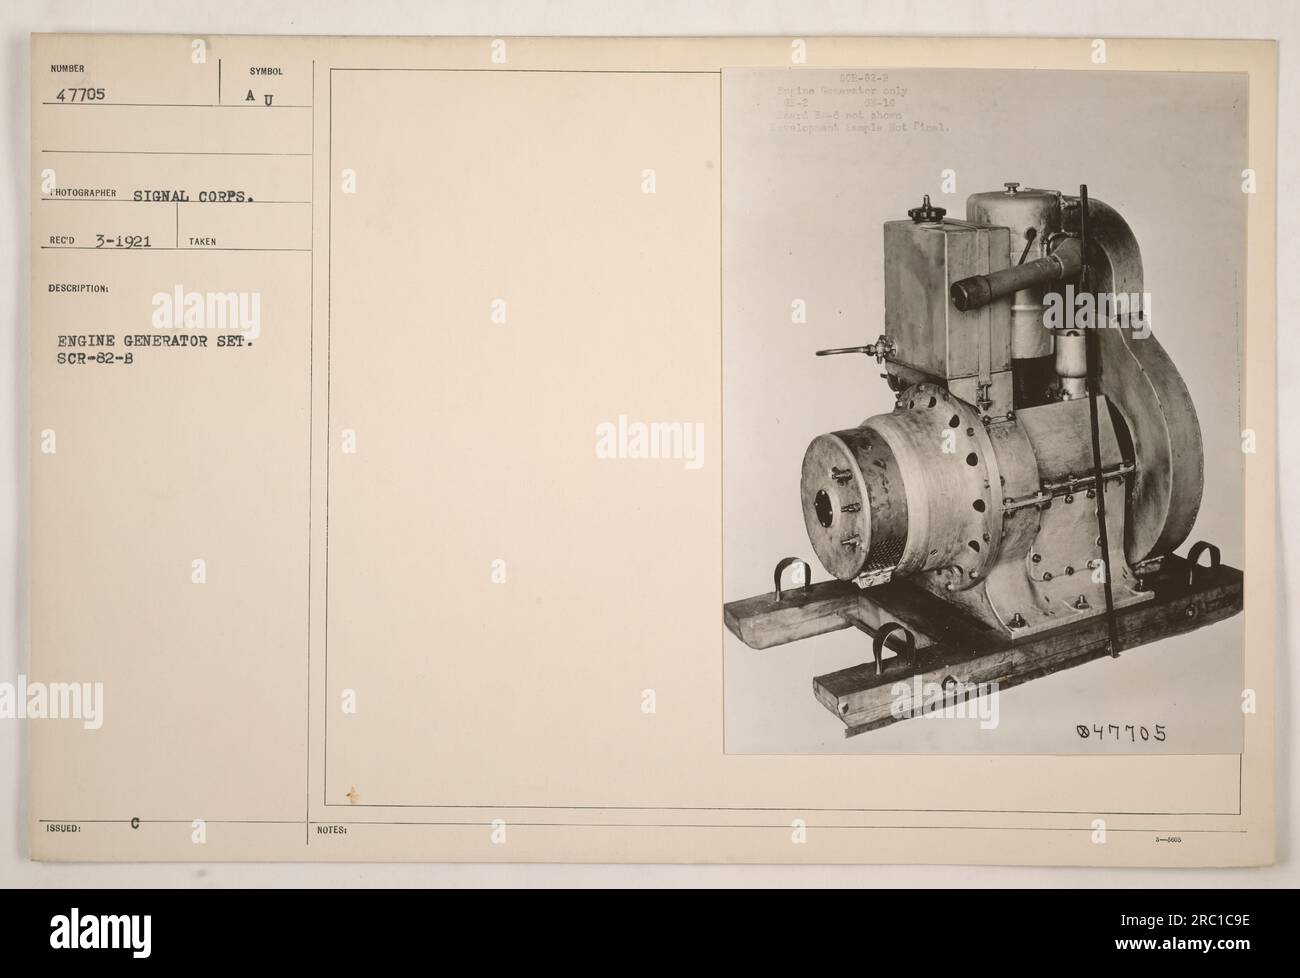 Ein Foto eines Stromaggregats mit der Bezeichnung SCR-82-B NUMMER 47705. Dieses Stromaggregat wurde im März 1921 von einem Fotografen des Signalkorps aufgenommen. Der Satz ist mit dem Symbol AU gekennzeichnet und wird in den Hinweisen als Motor-Stromaggregat für den SCR-82-B beschrieben Stockfoto